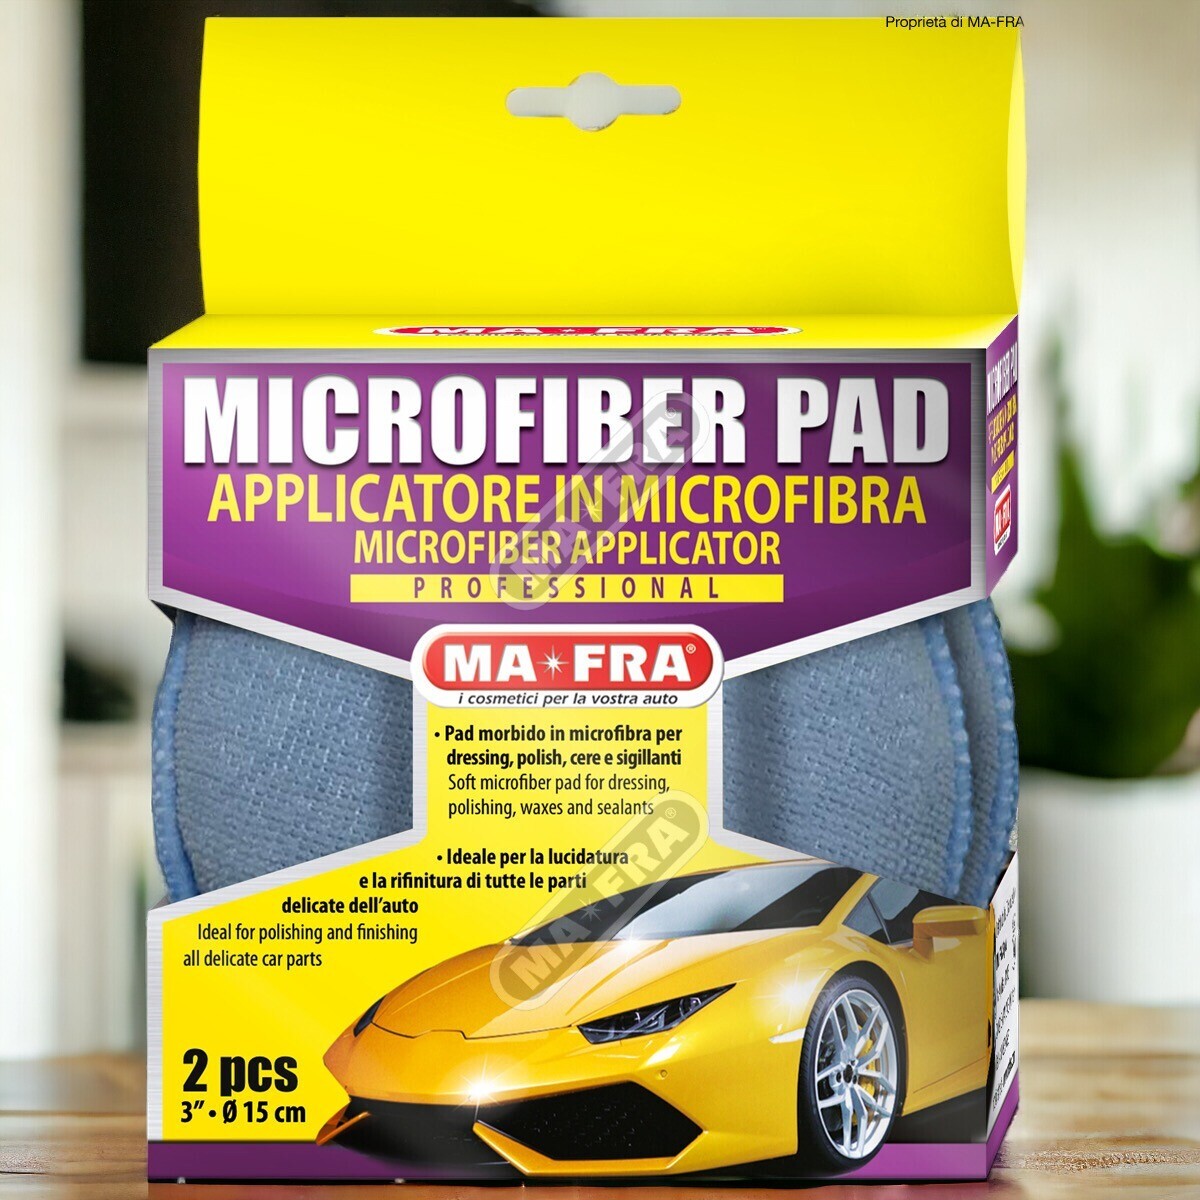 Microfiber pad confezione 1 pezzo